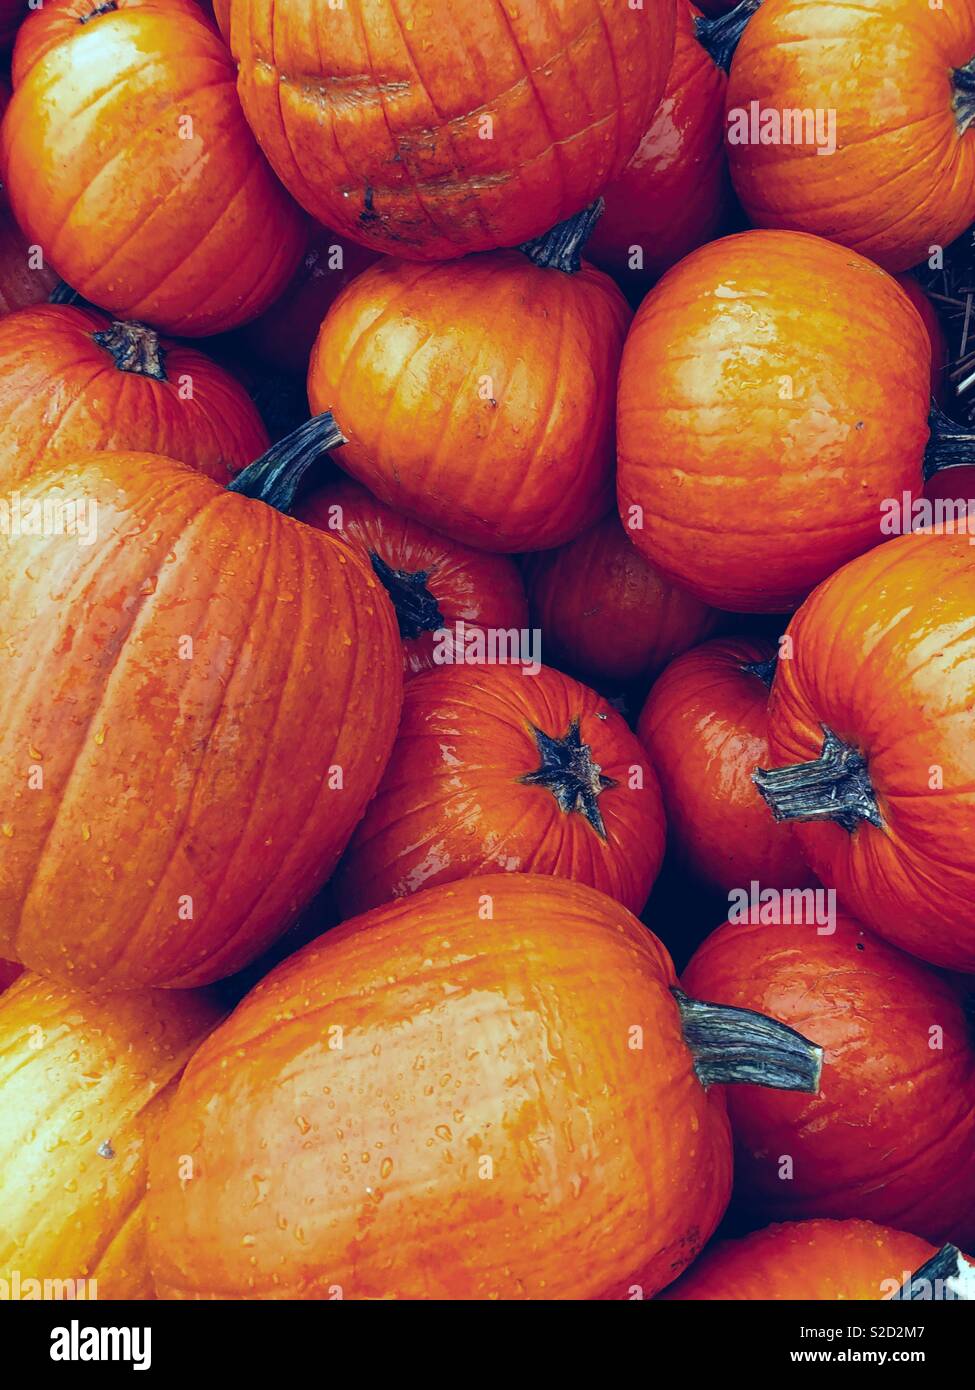 La couleur orange est la tendance de l'automne Banque D'Images